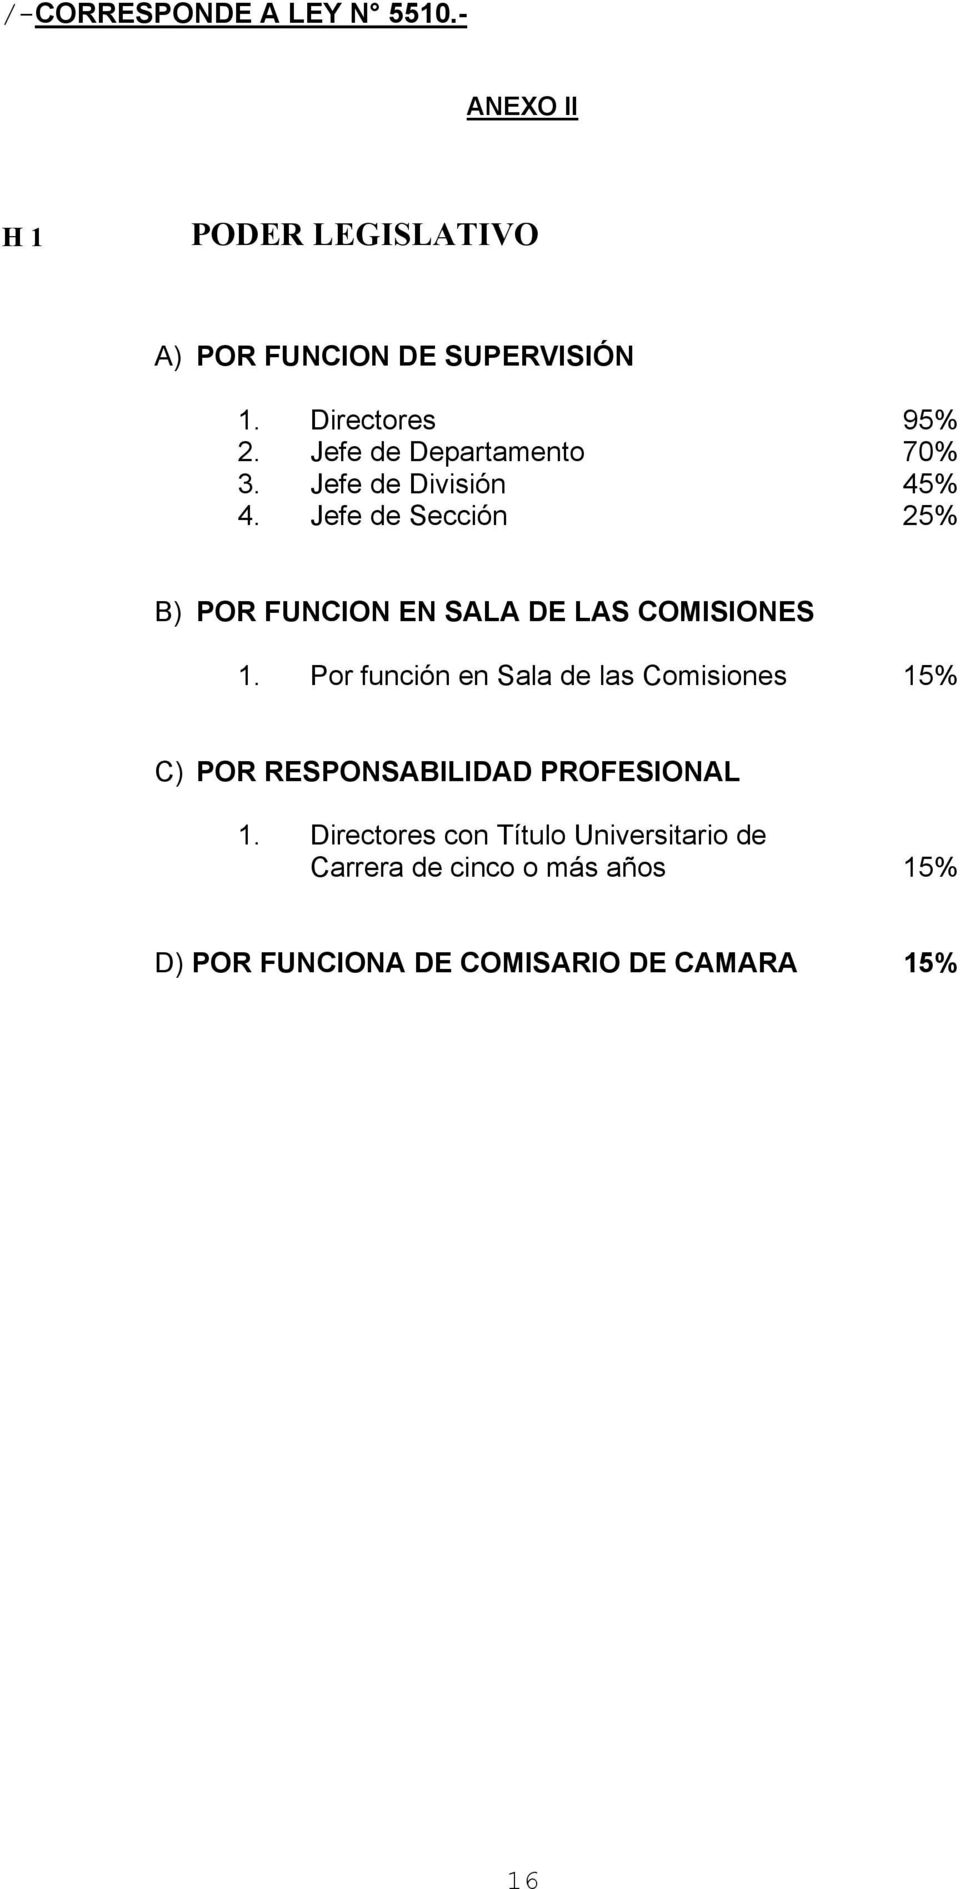 Jefe de Sección 25% B) POR FUNCION EN SALA DE LAS COMISIONES 1.